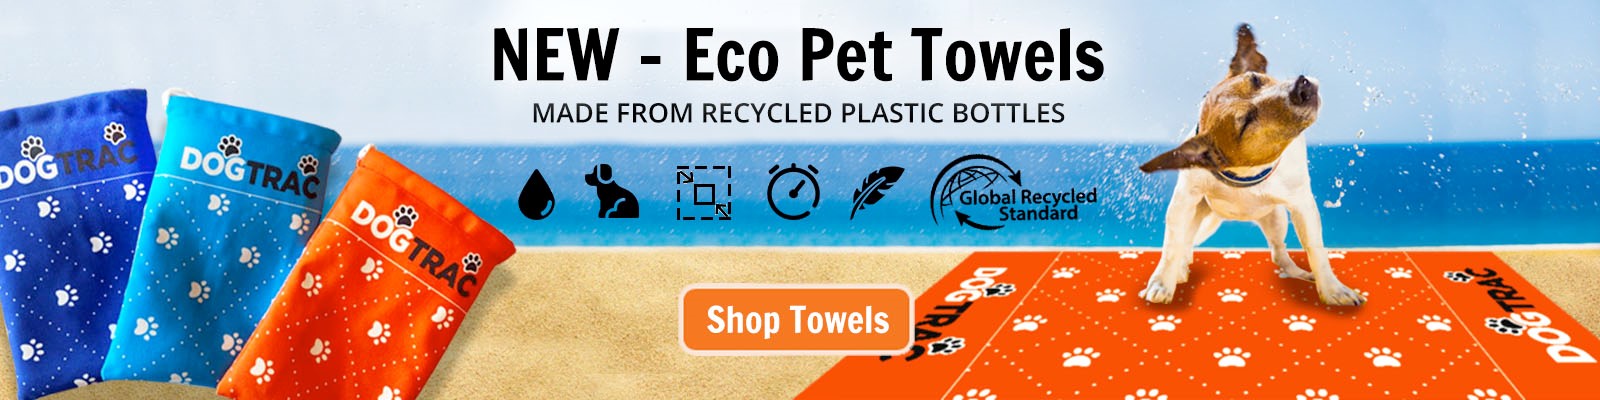 New - Eco Pet Towels